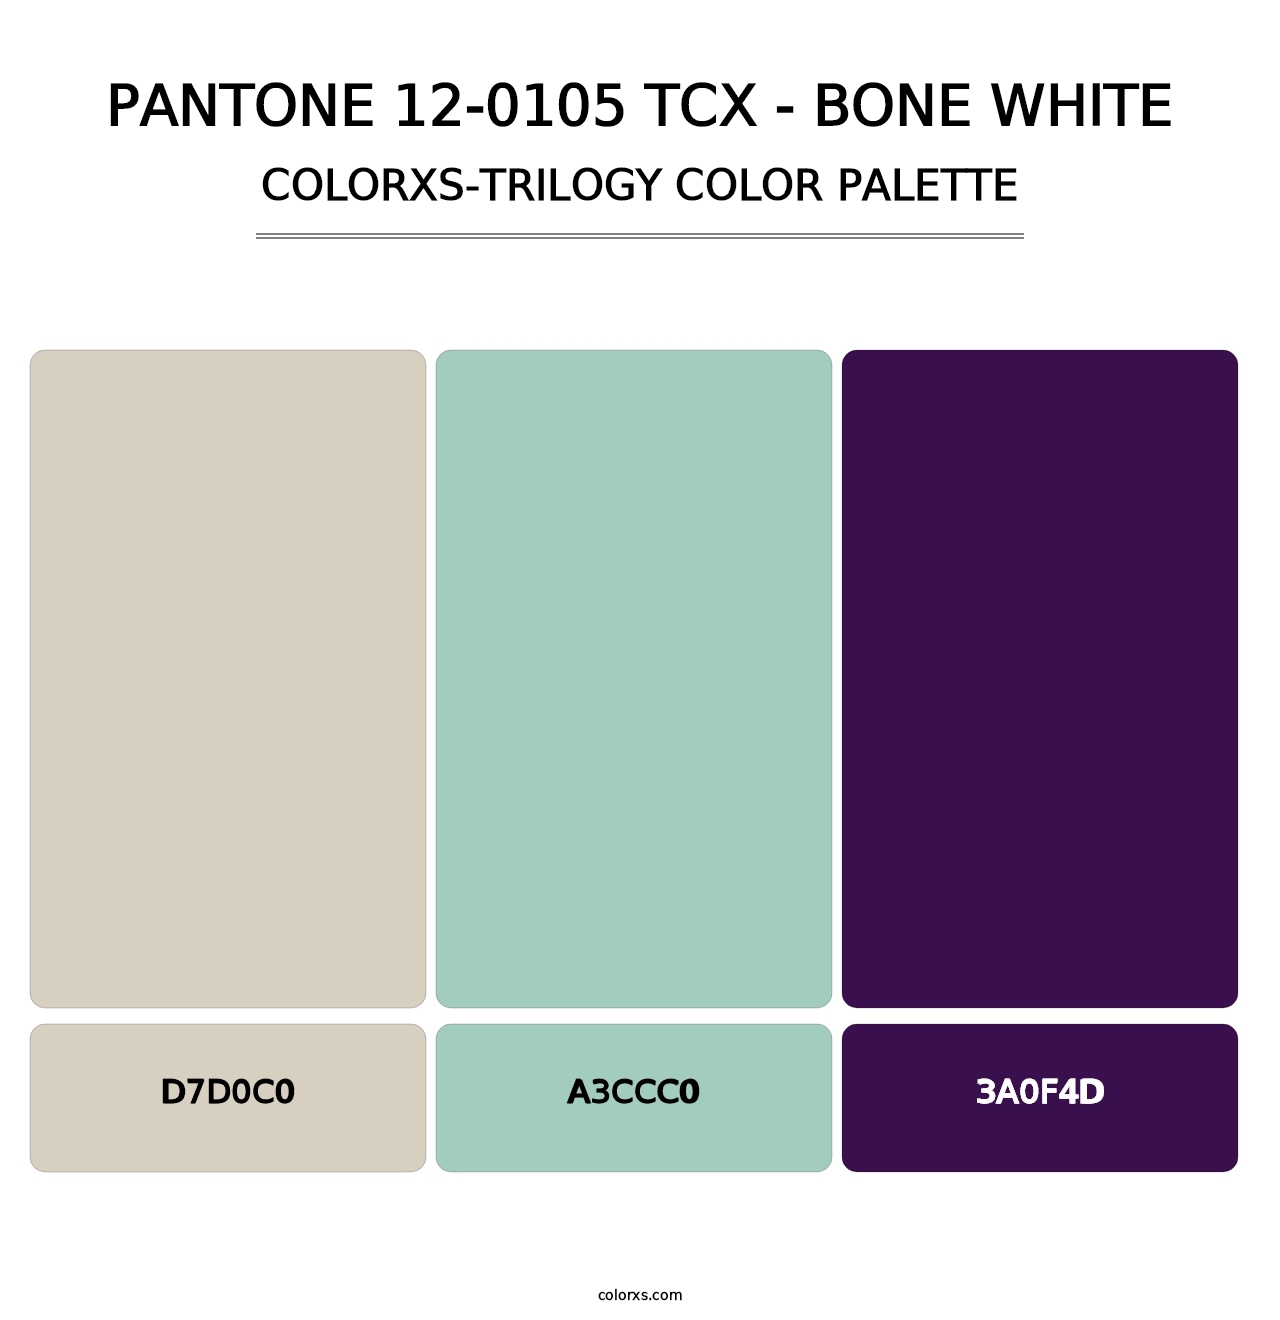 PANTONE 12-0105 TCX - Bone White - Colorxs Trilogy Palette